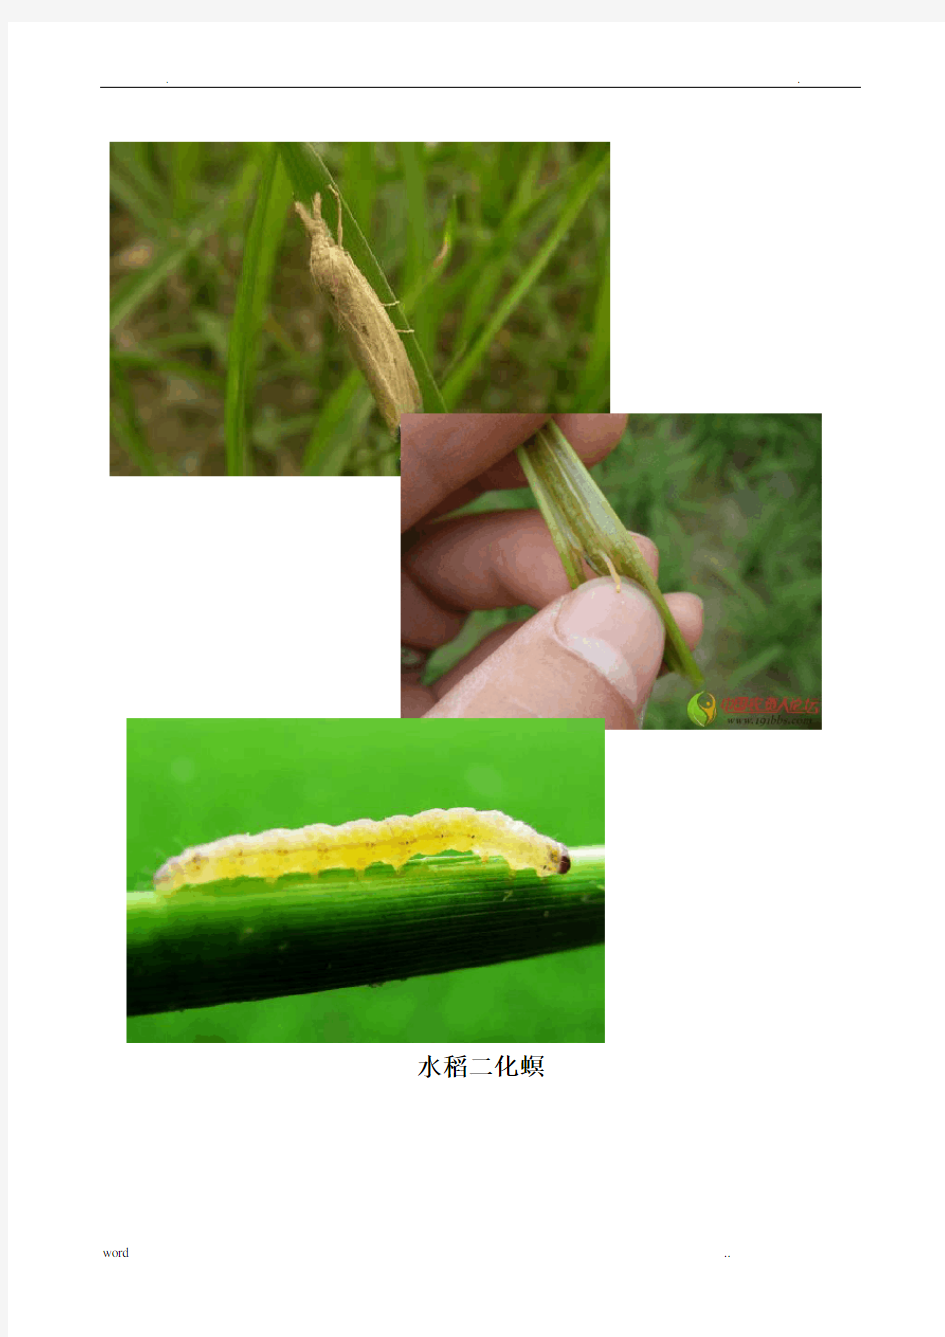 农作物常见病虫害图片